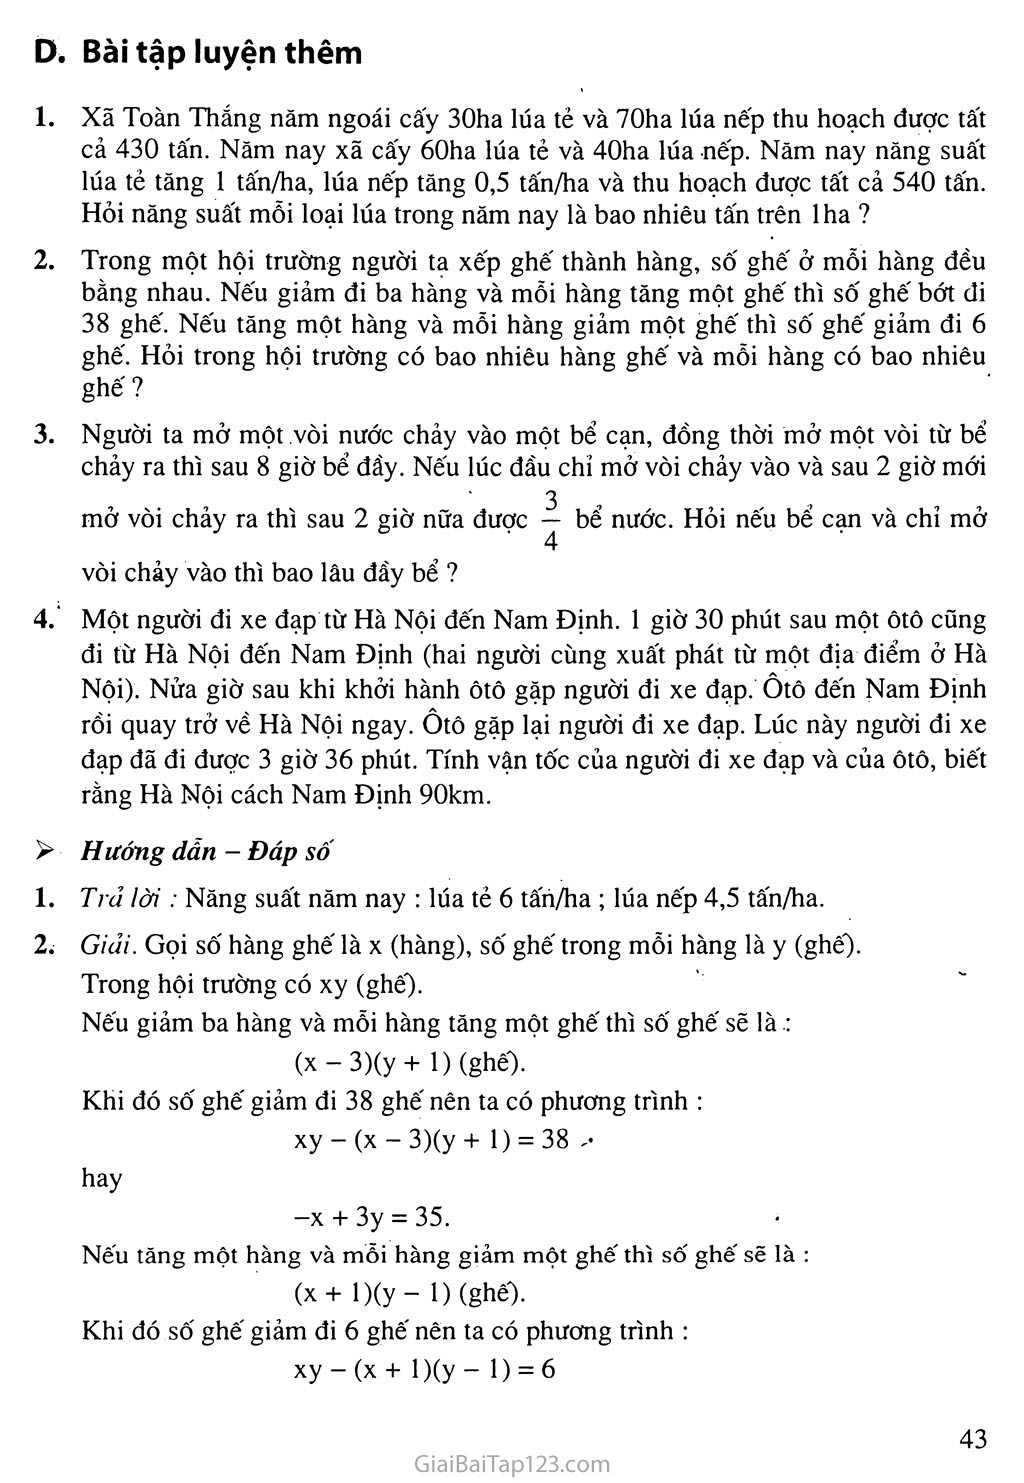 Bài 5. Giải bài toán bằng cách lập hệ phương trình trang 8